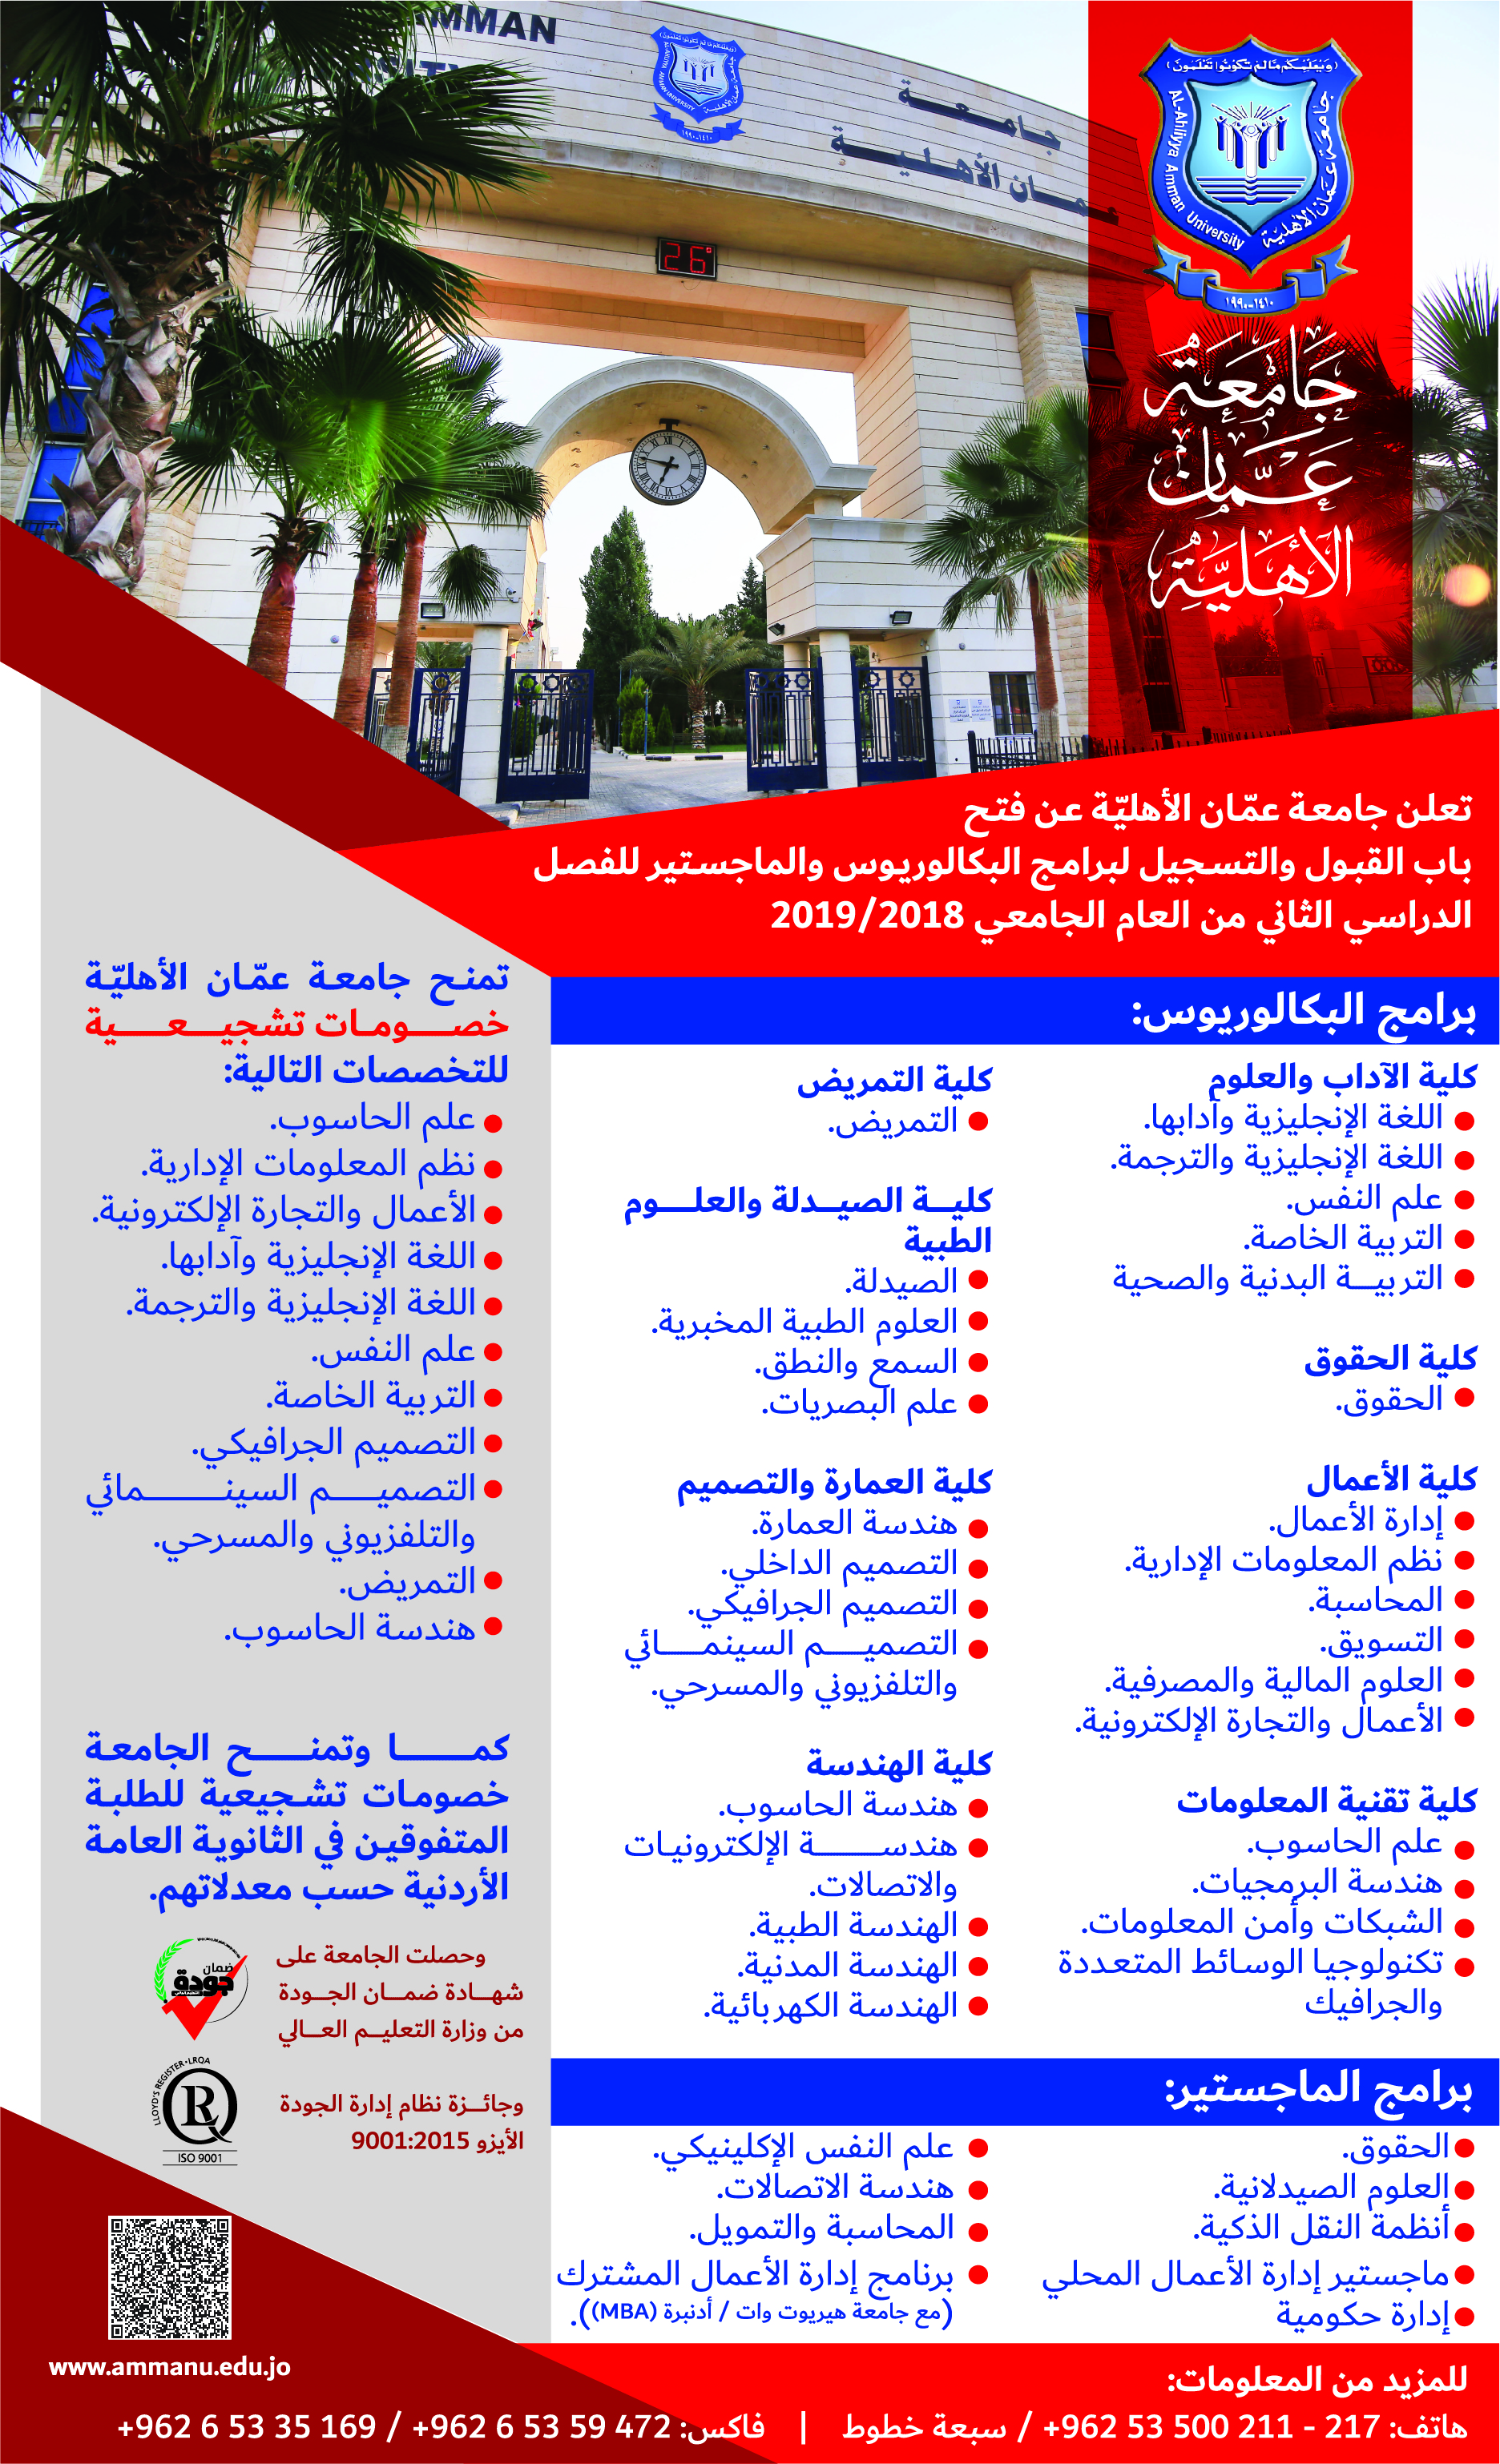 فتح باب القبول والتسجيل لبرامج البكالوريوس والماجستيرفي جامعة عمان الاهلية